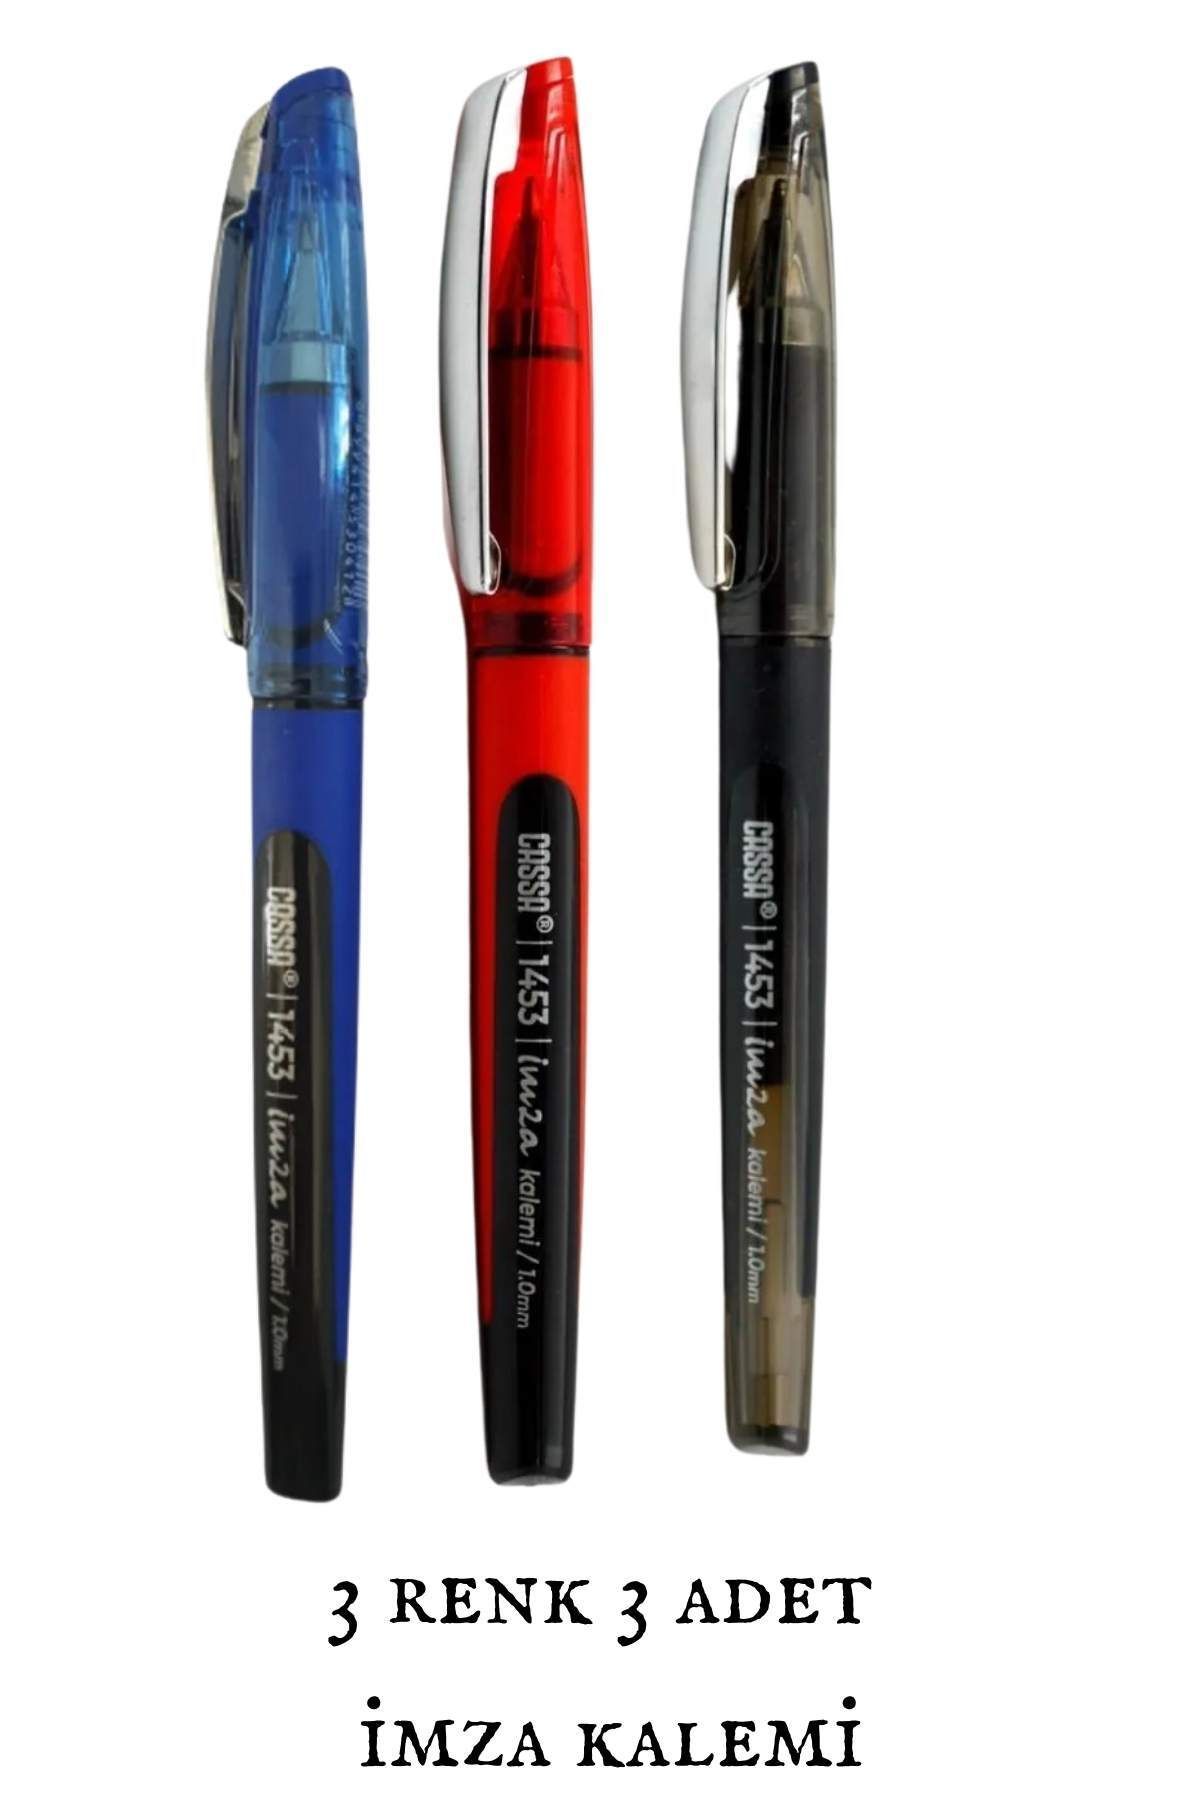 Cassa İmza Kalemi 3 Renk (Siyah-Kırmızı-Mavi) 3 Adet 1453 1.0 mm